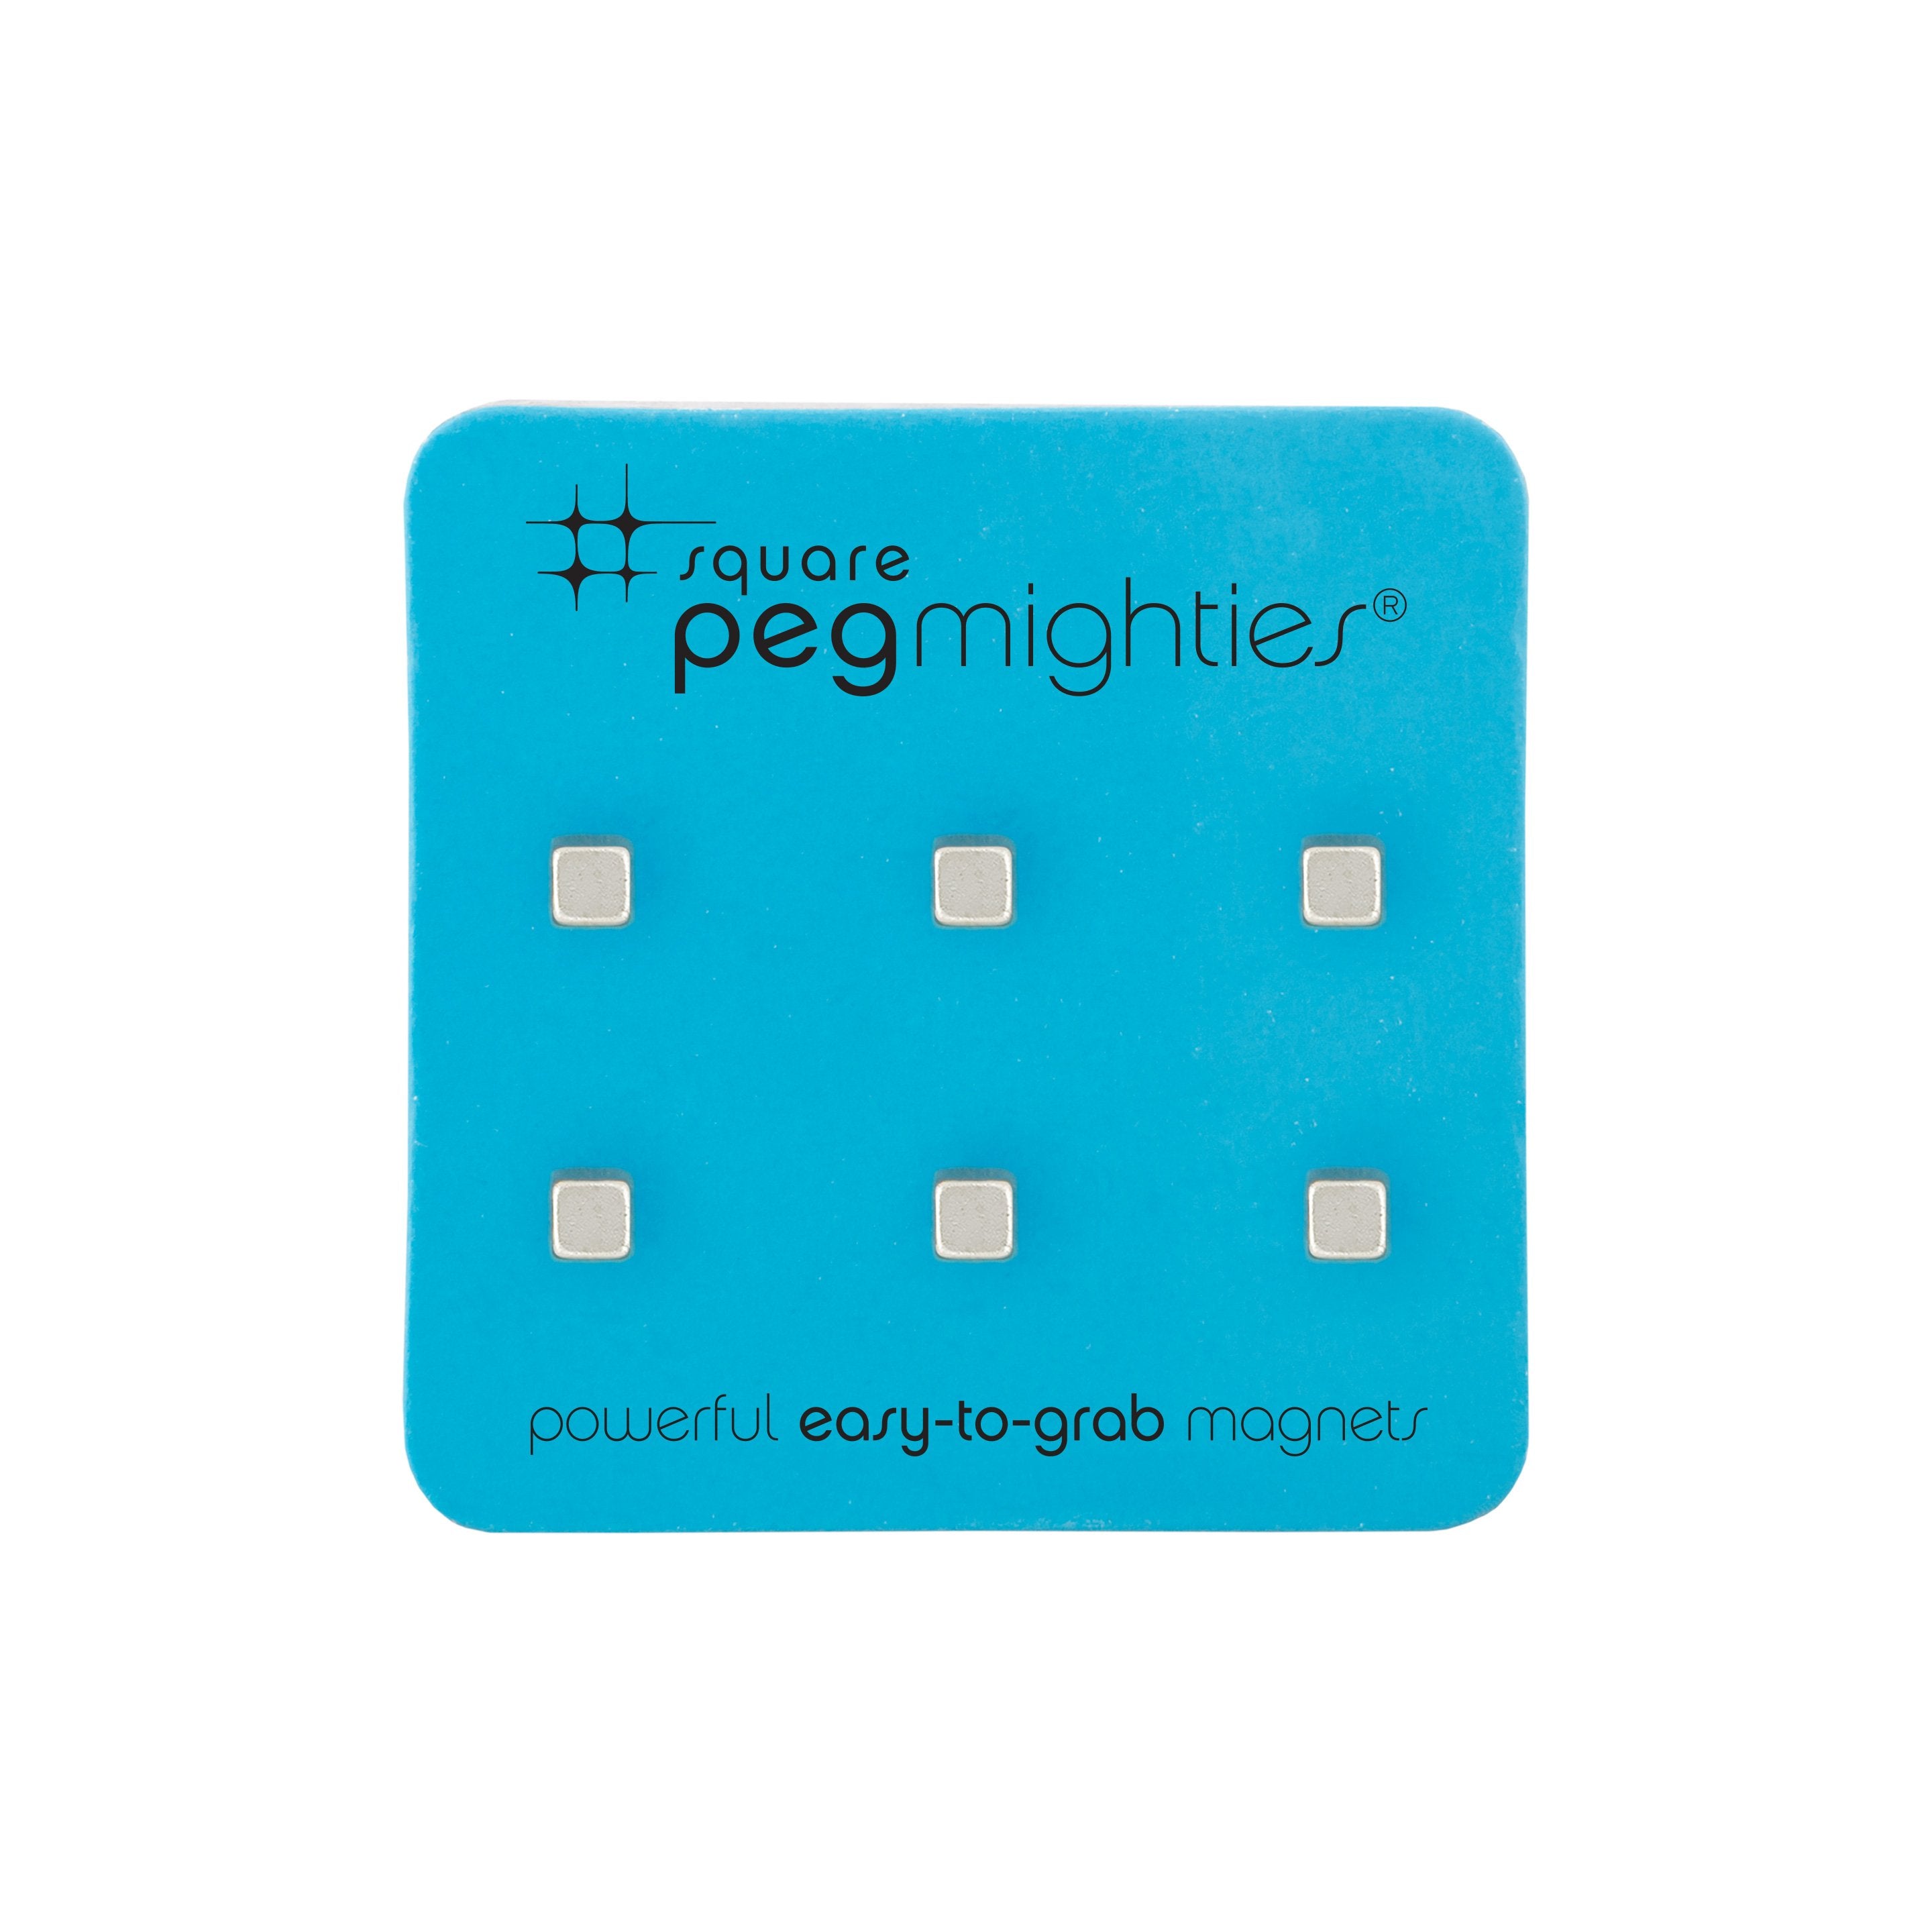 square peg mighties®